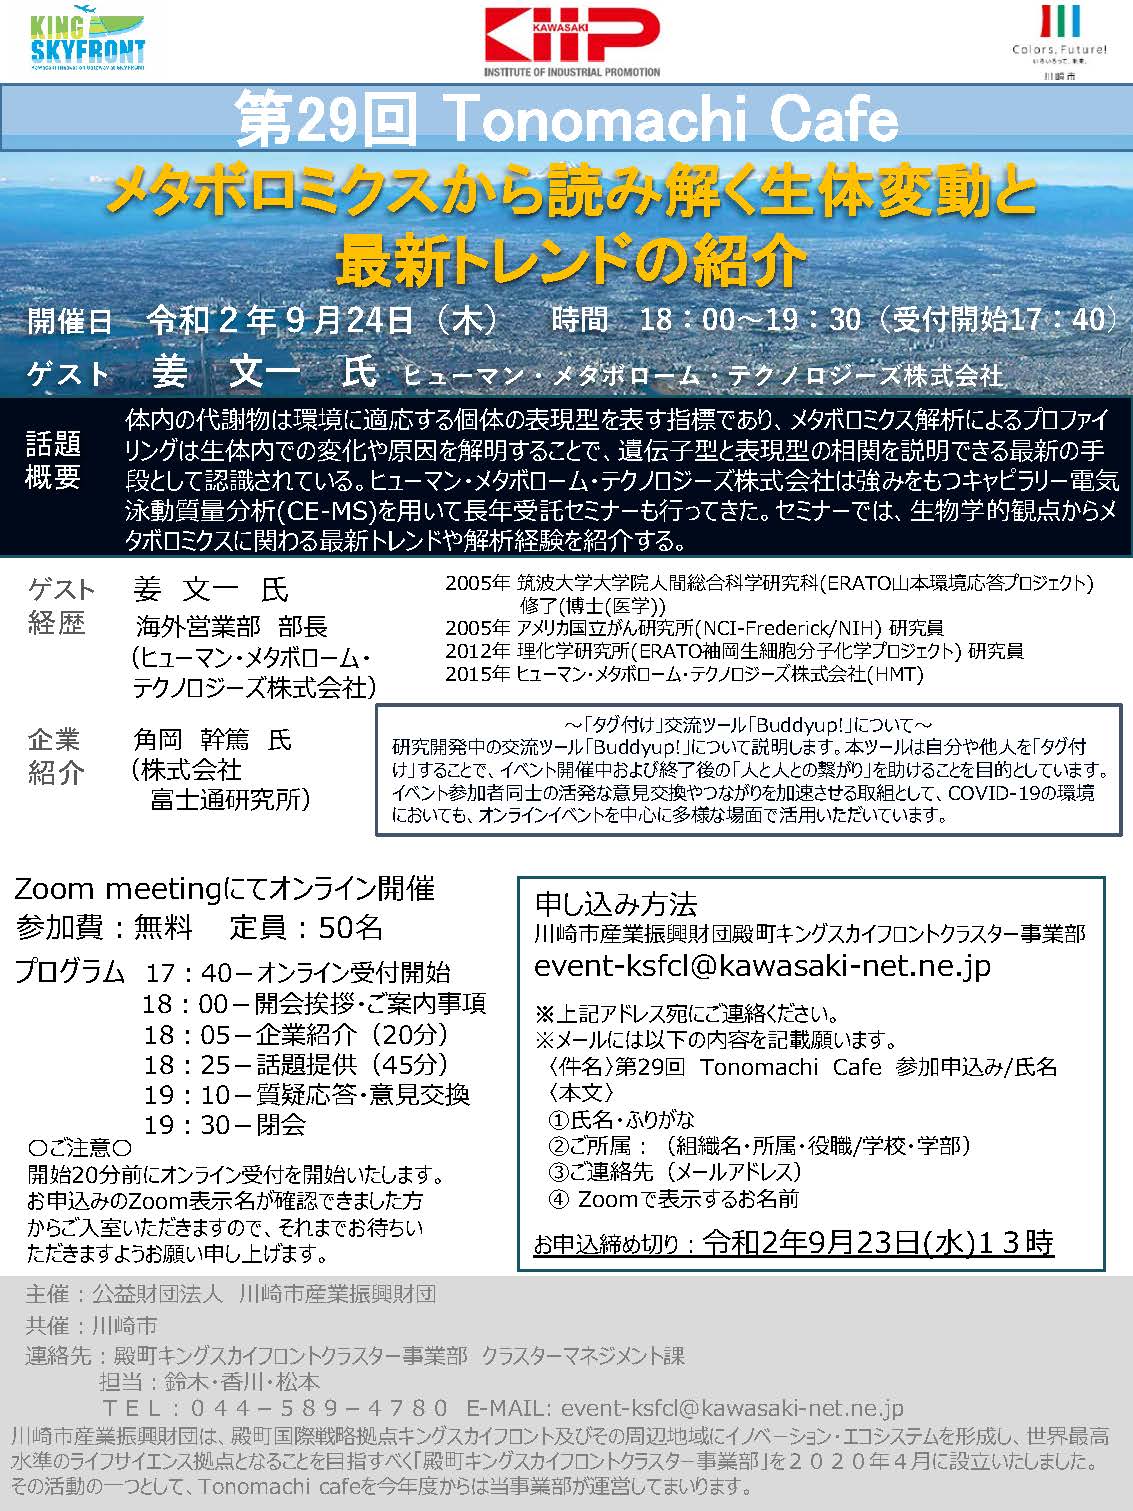 The 29th Tonomachi café online version leaflet image